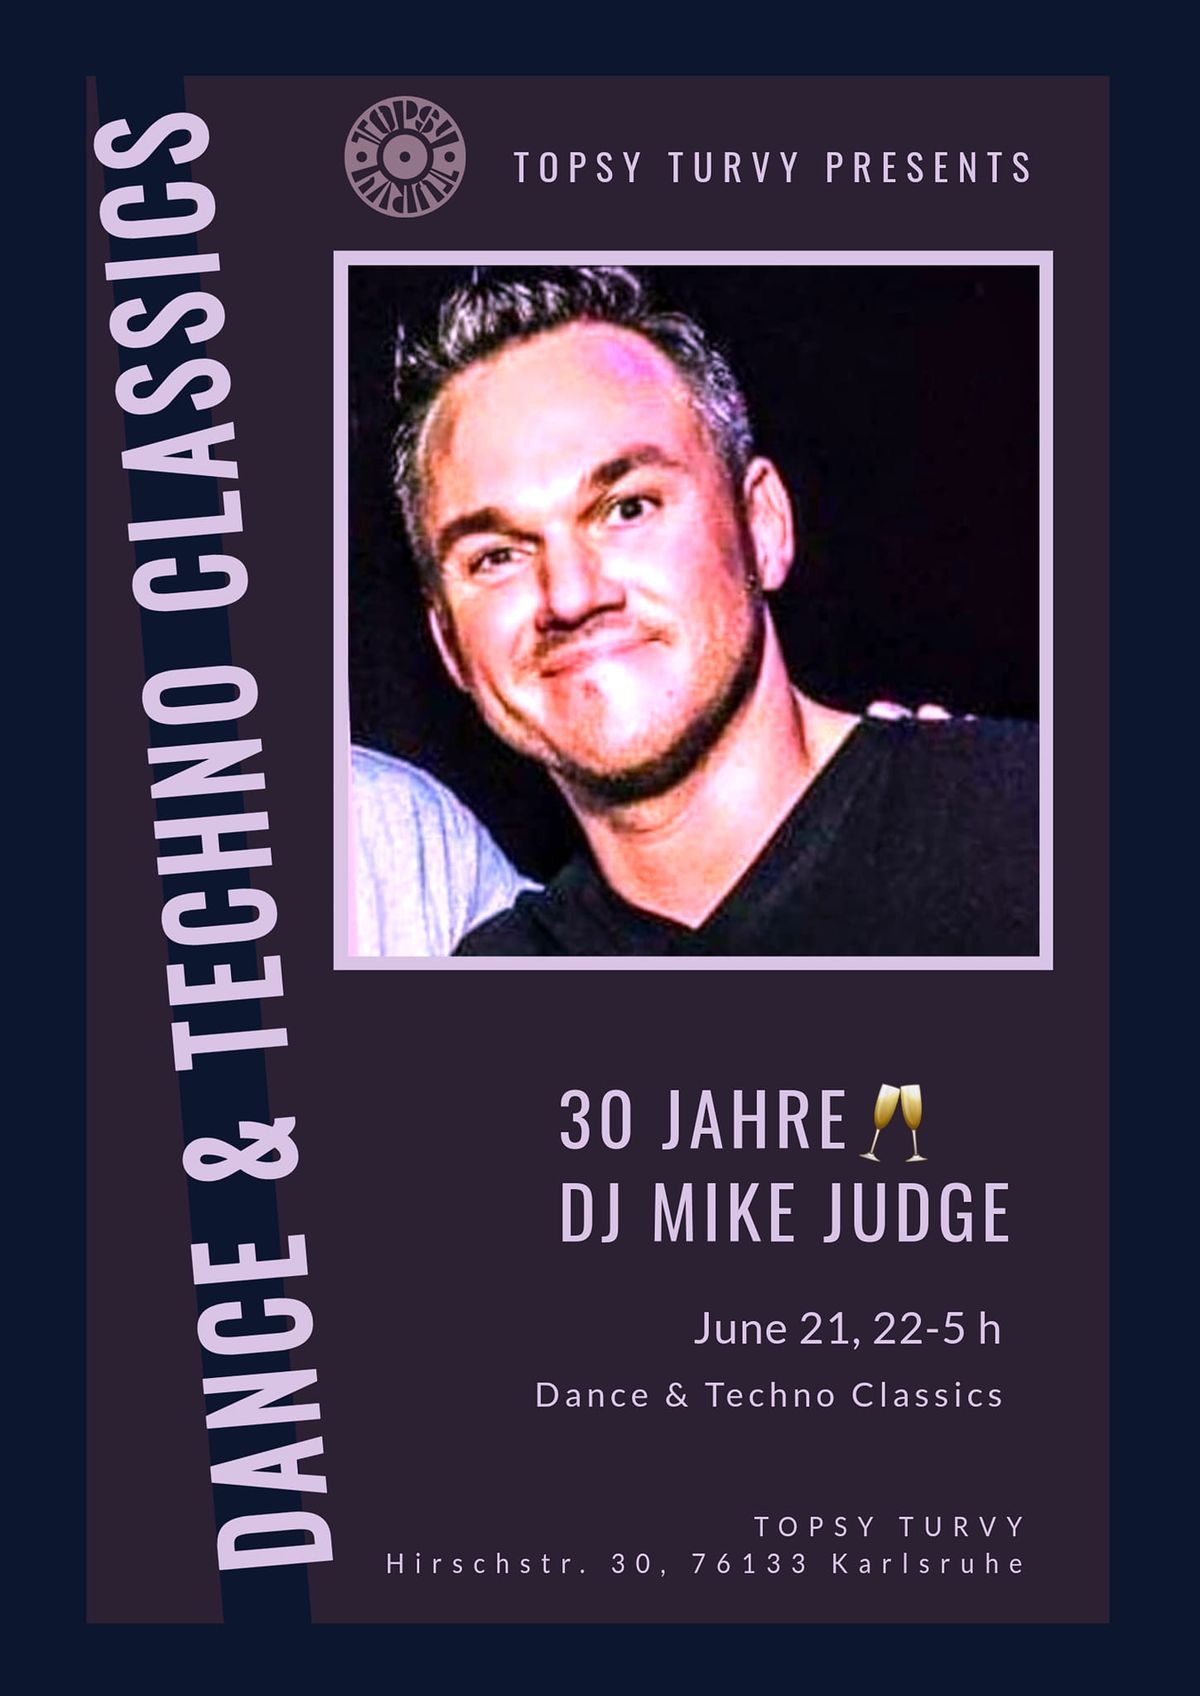 DANCE & TECHNO CLASSICS  \/\/  30 JAHRE DJ JUDGE 